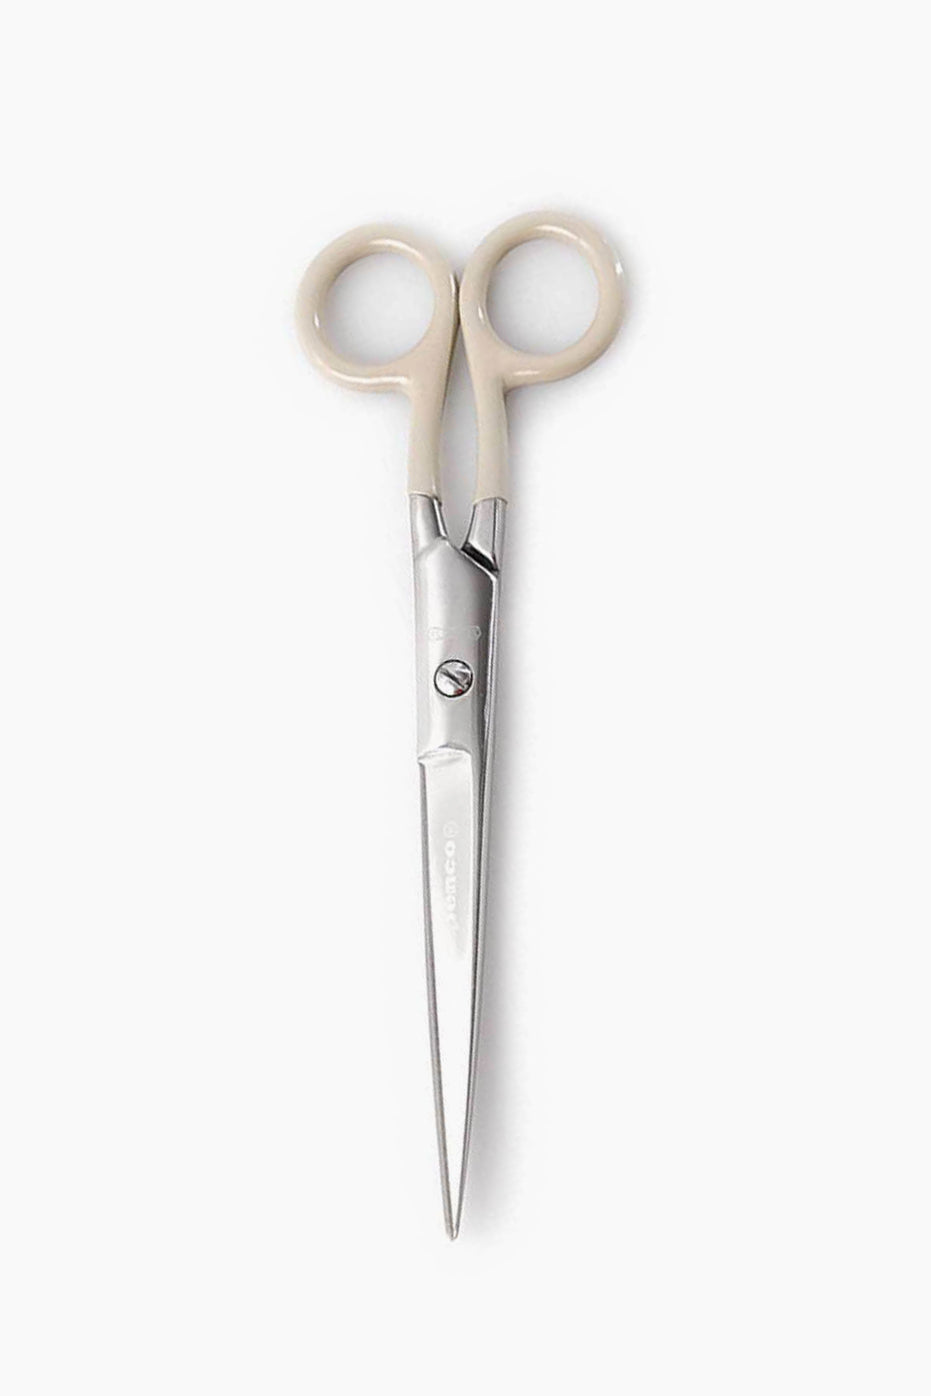 Stainless scissors large ivory-Penco-KIOSK48TH